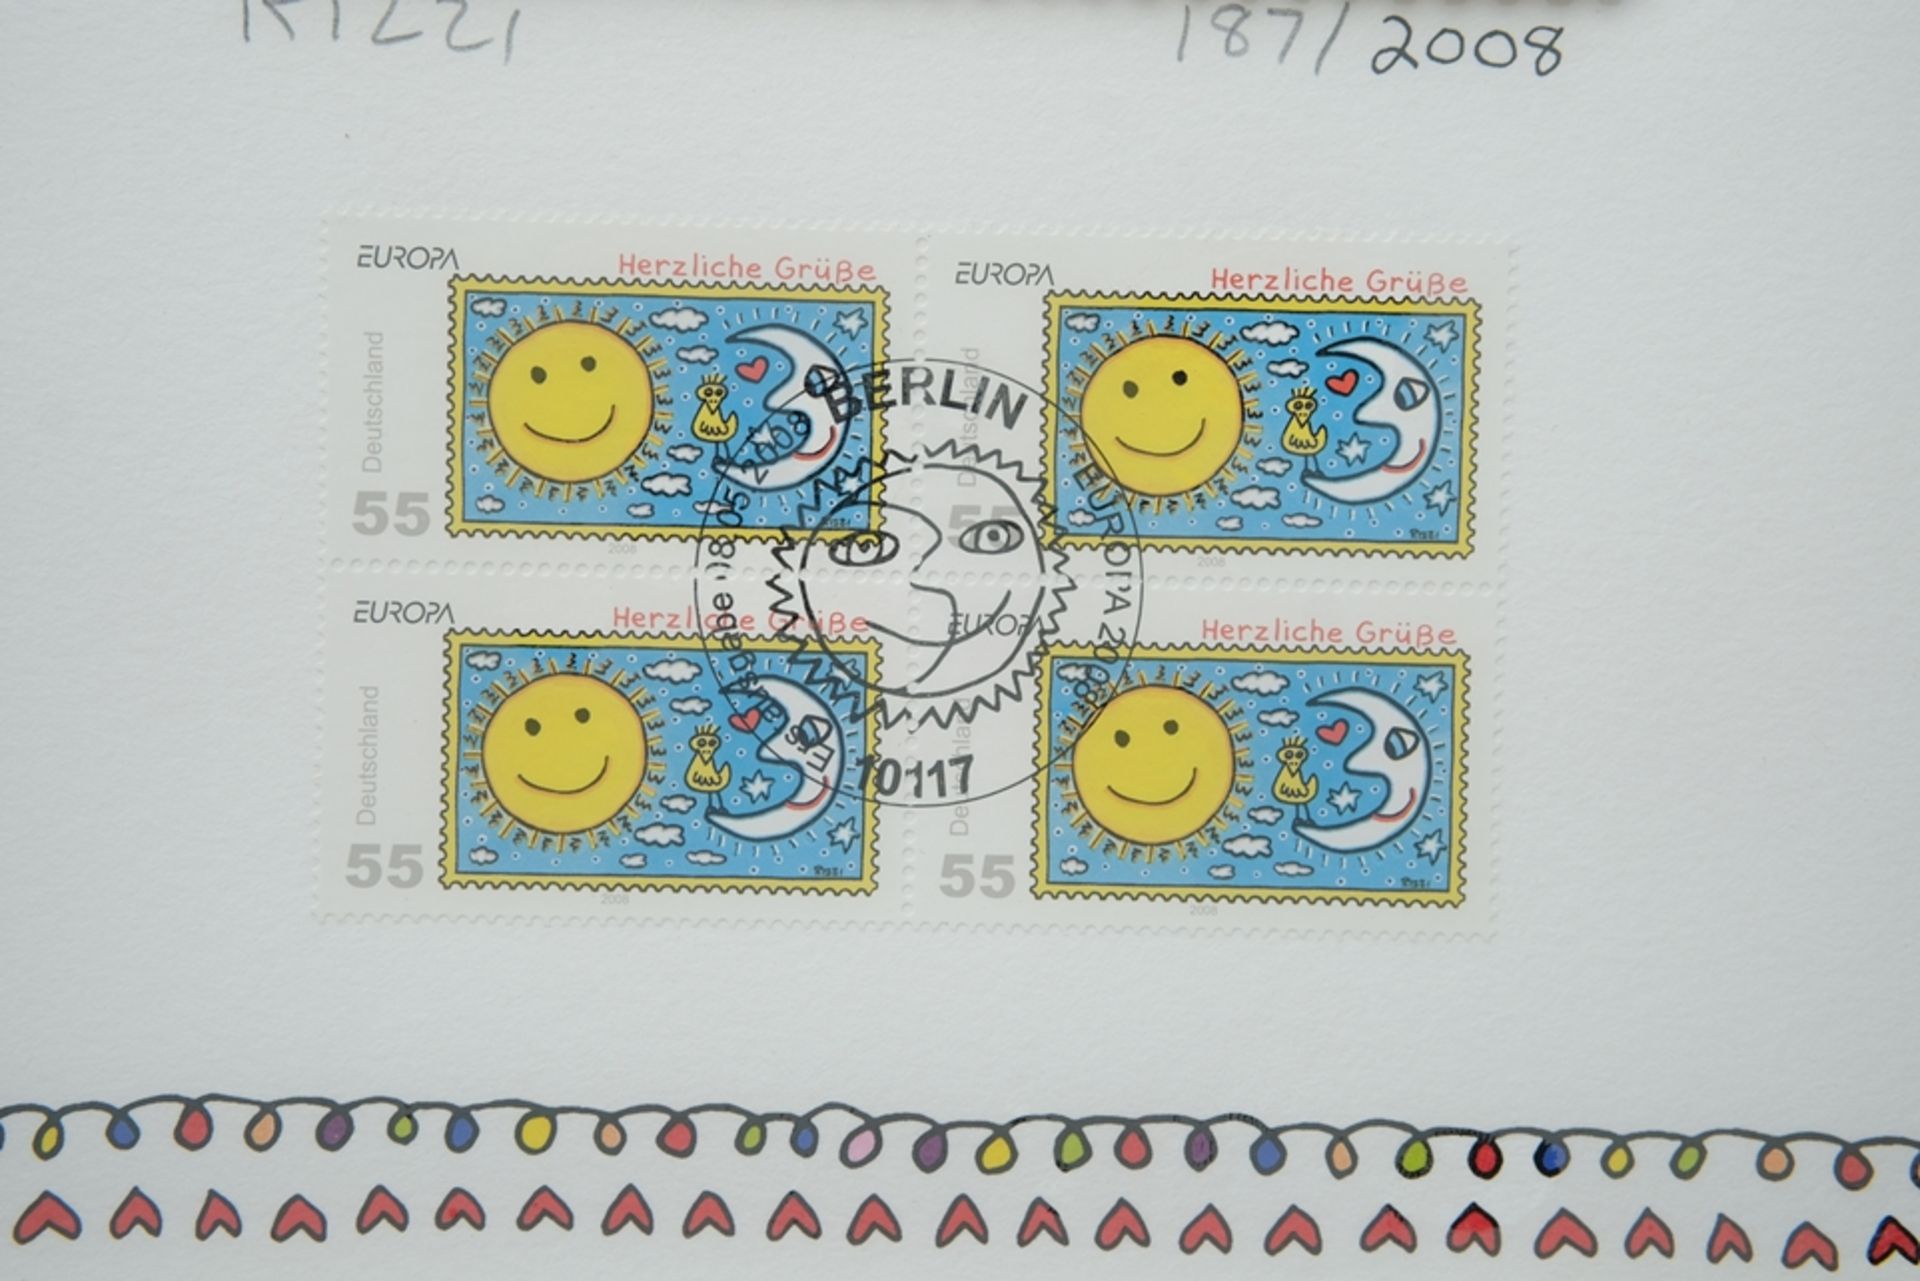 Rizzi, James (1950-2011) "Herzliche Grüße - Sonne und Mond", Briefmarken Sonderedition 2008. 3D-Gra - Bild 3 aus 5